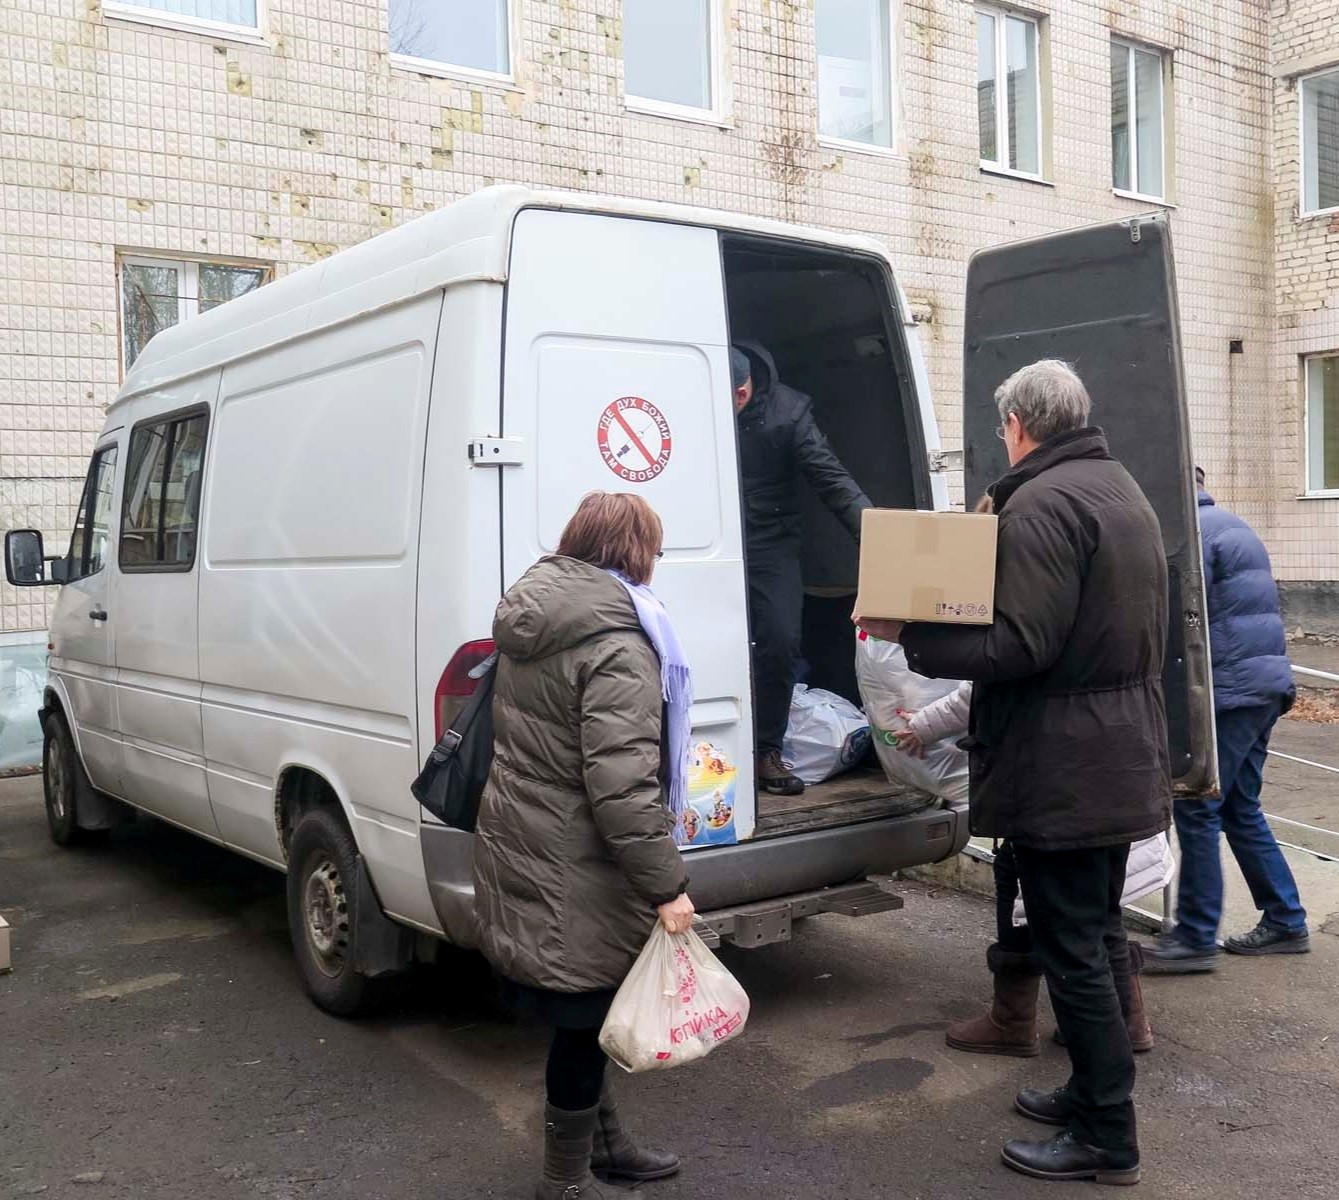 Local Churches in Ukraine Launch Brave Aid Effort in War Zone